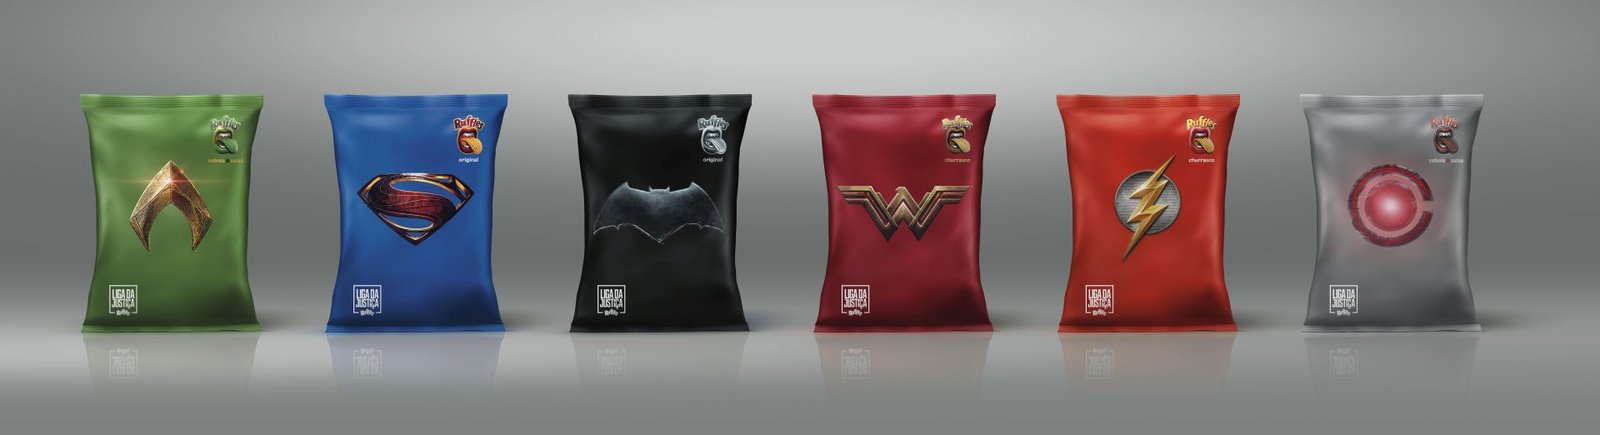 CCXP: Ruffles se veste de Cosplay e lança embalagens da 'Liga da Justiça'